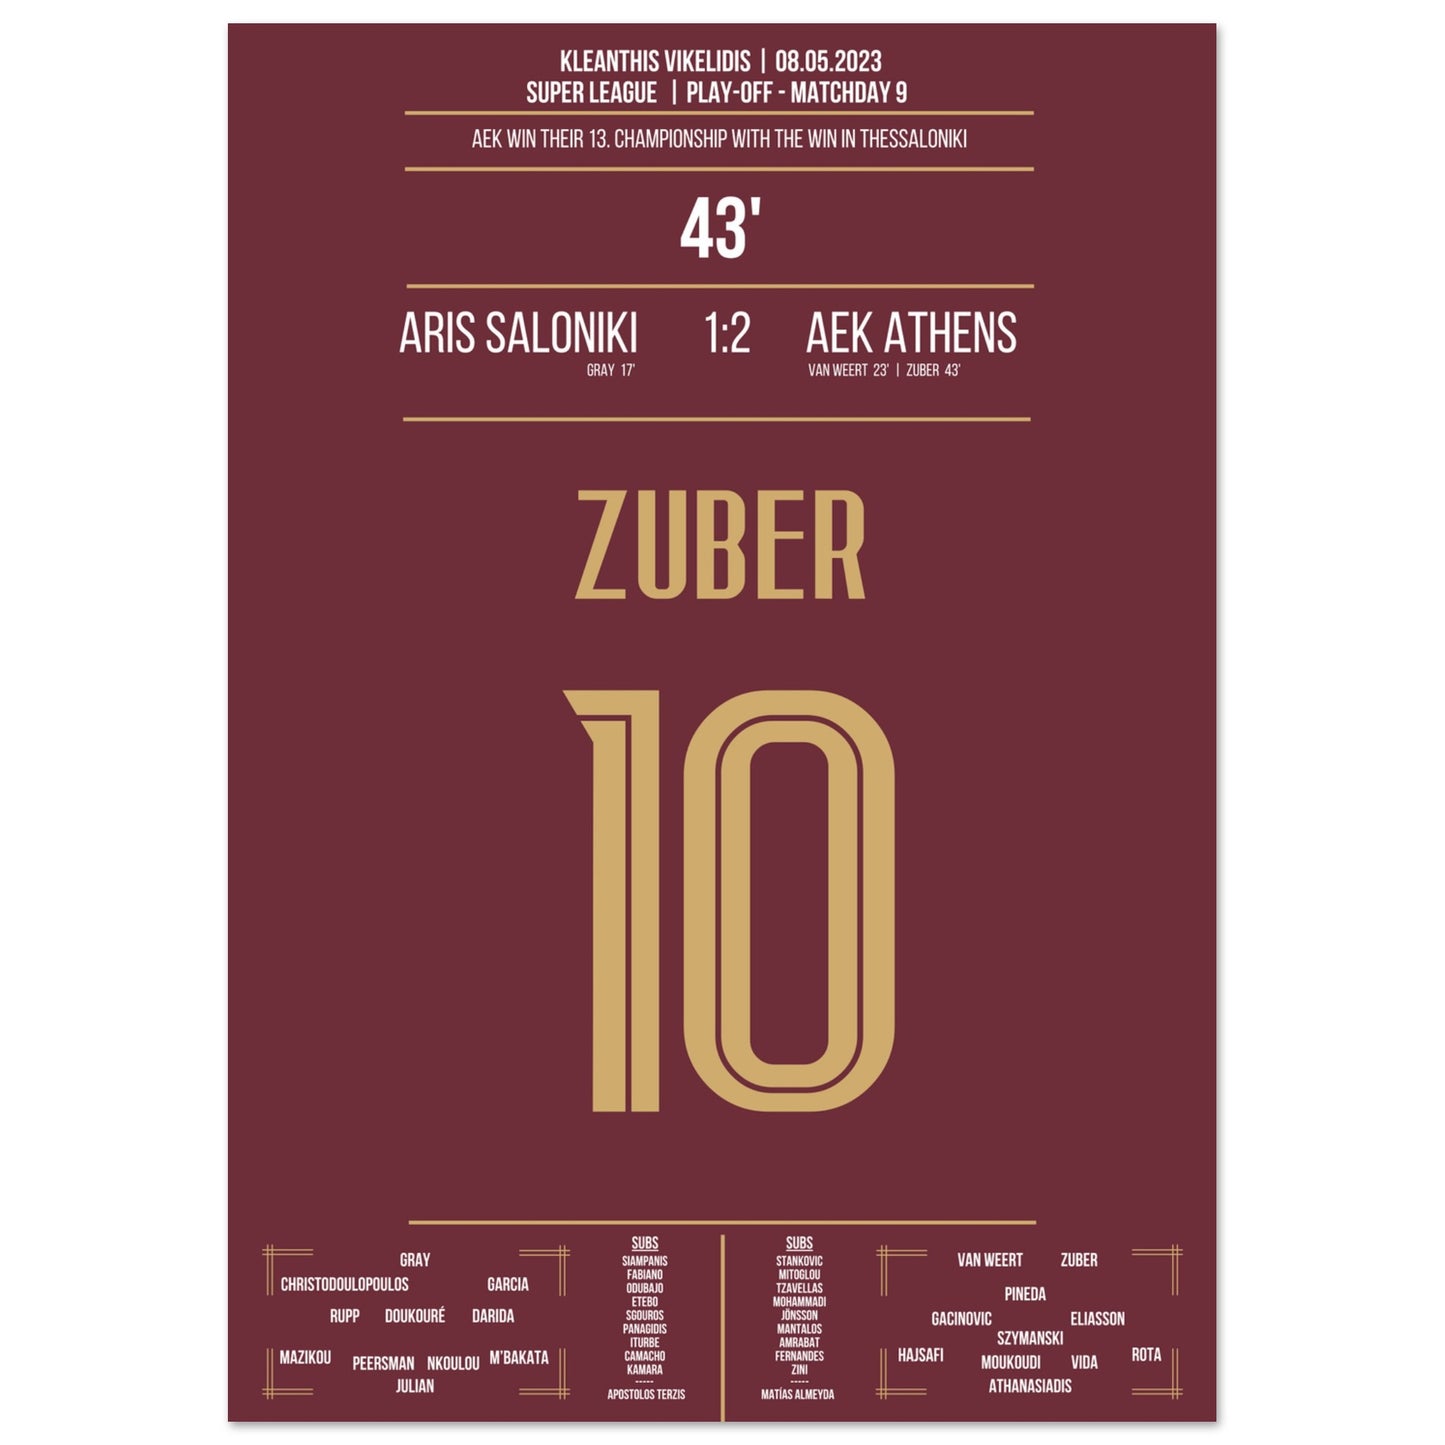 Zuber's Tor zu AEK's 13. Meisterschaft